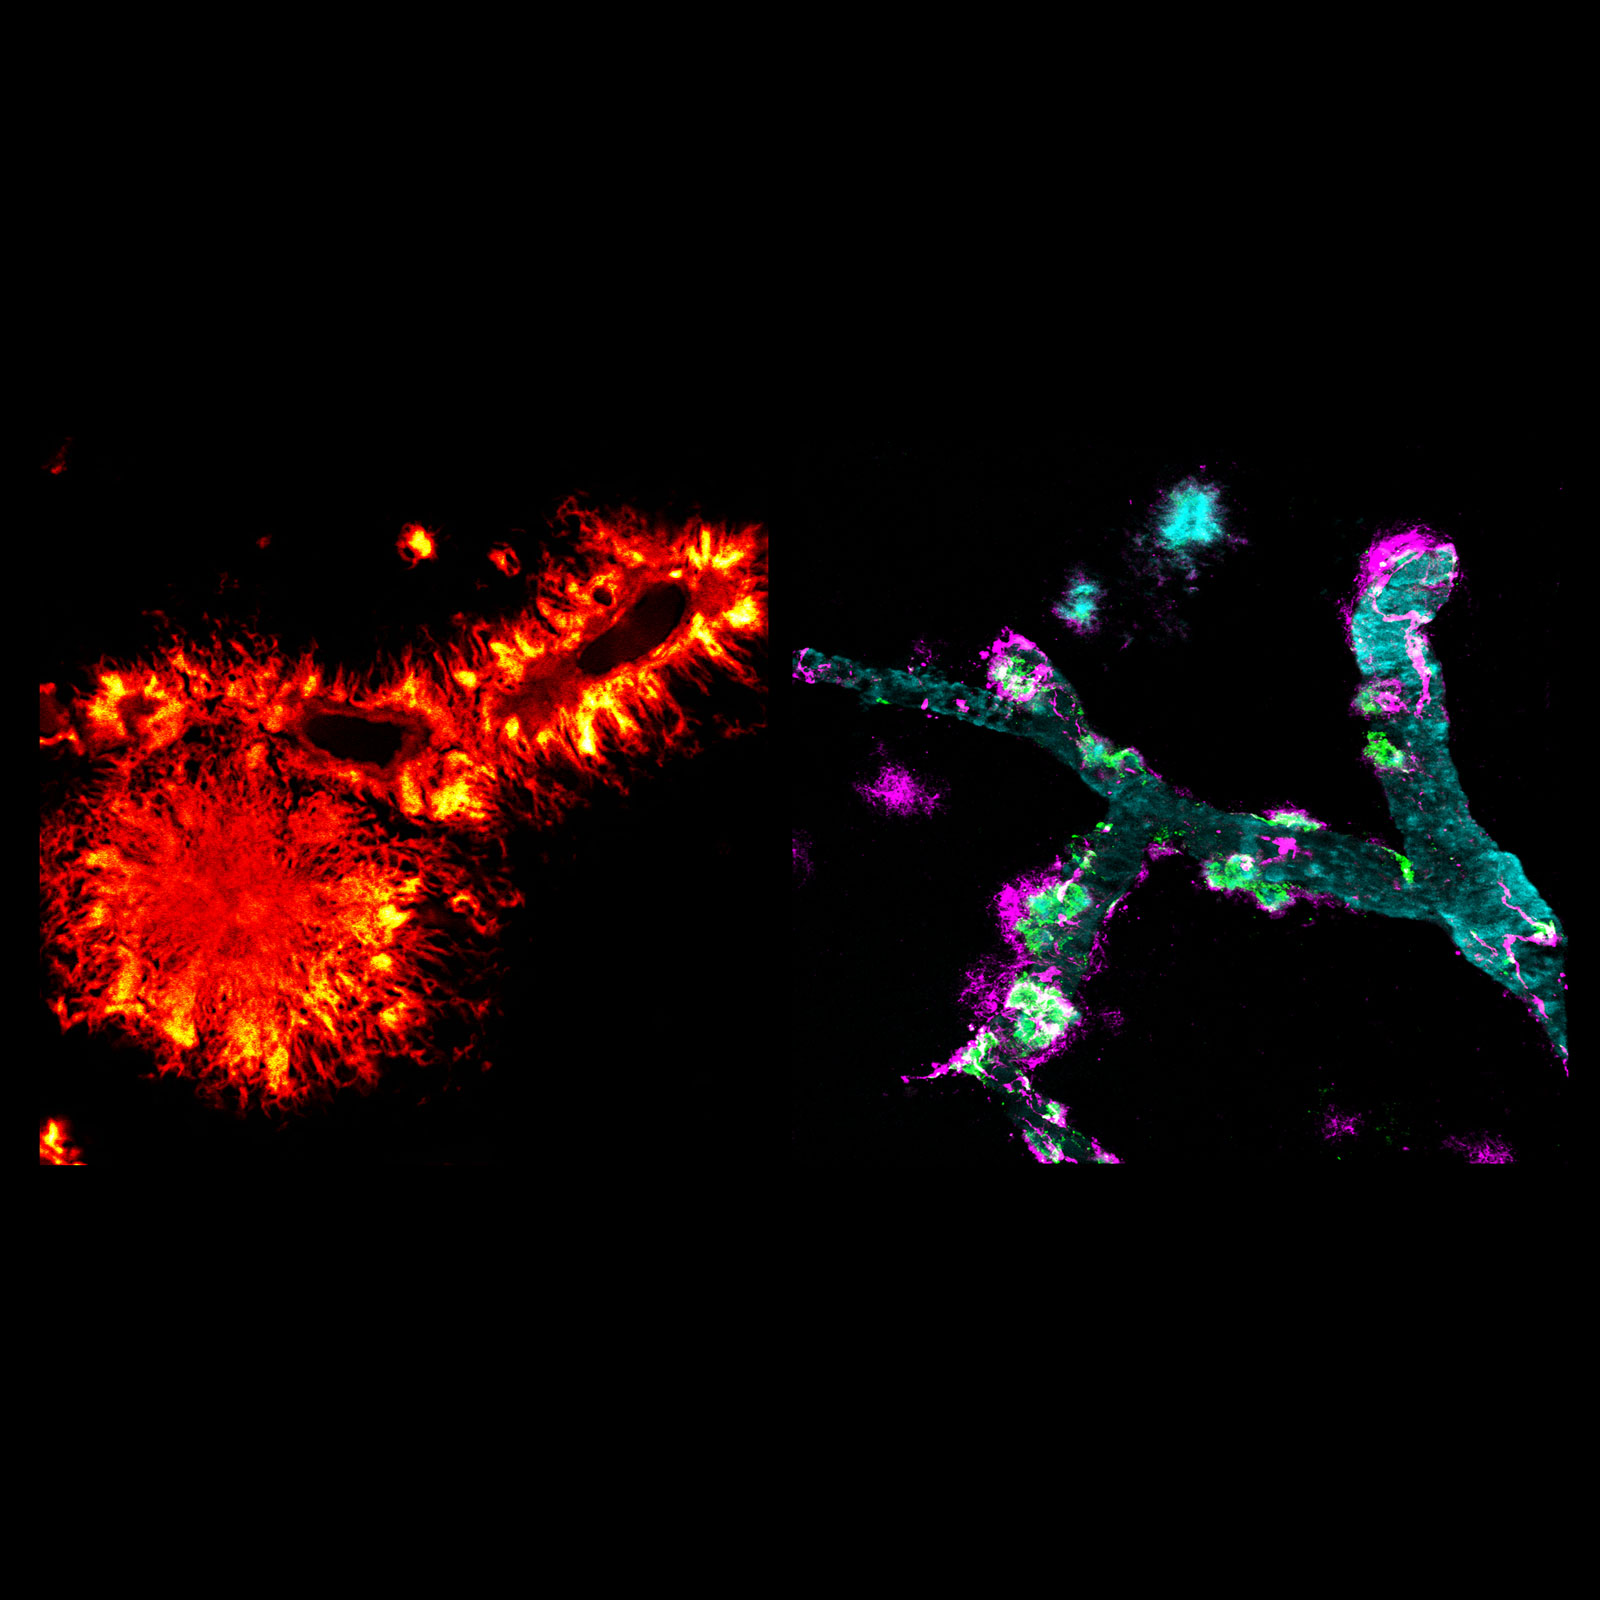 Das rot-gelbe-gelbe Bild zeigt links unten einen Amyloid-Plaque, der an eine Blume erinnert. Darüber und rechts oben sind Querschnitte von Blutgefäßen zu sehen mit flammenartigen Amyloid-Fibrillen. Auf dem zweiten Bild ist in bläulicher Farbe ein Blutgefäß zu erkennen, in dem sich Amyloid-Beta- und Medin-Abblagerungen befinden - farblich markiert in lila und grün.